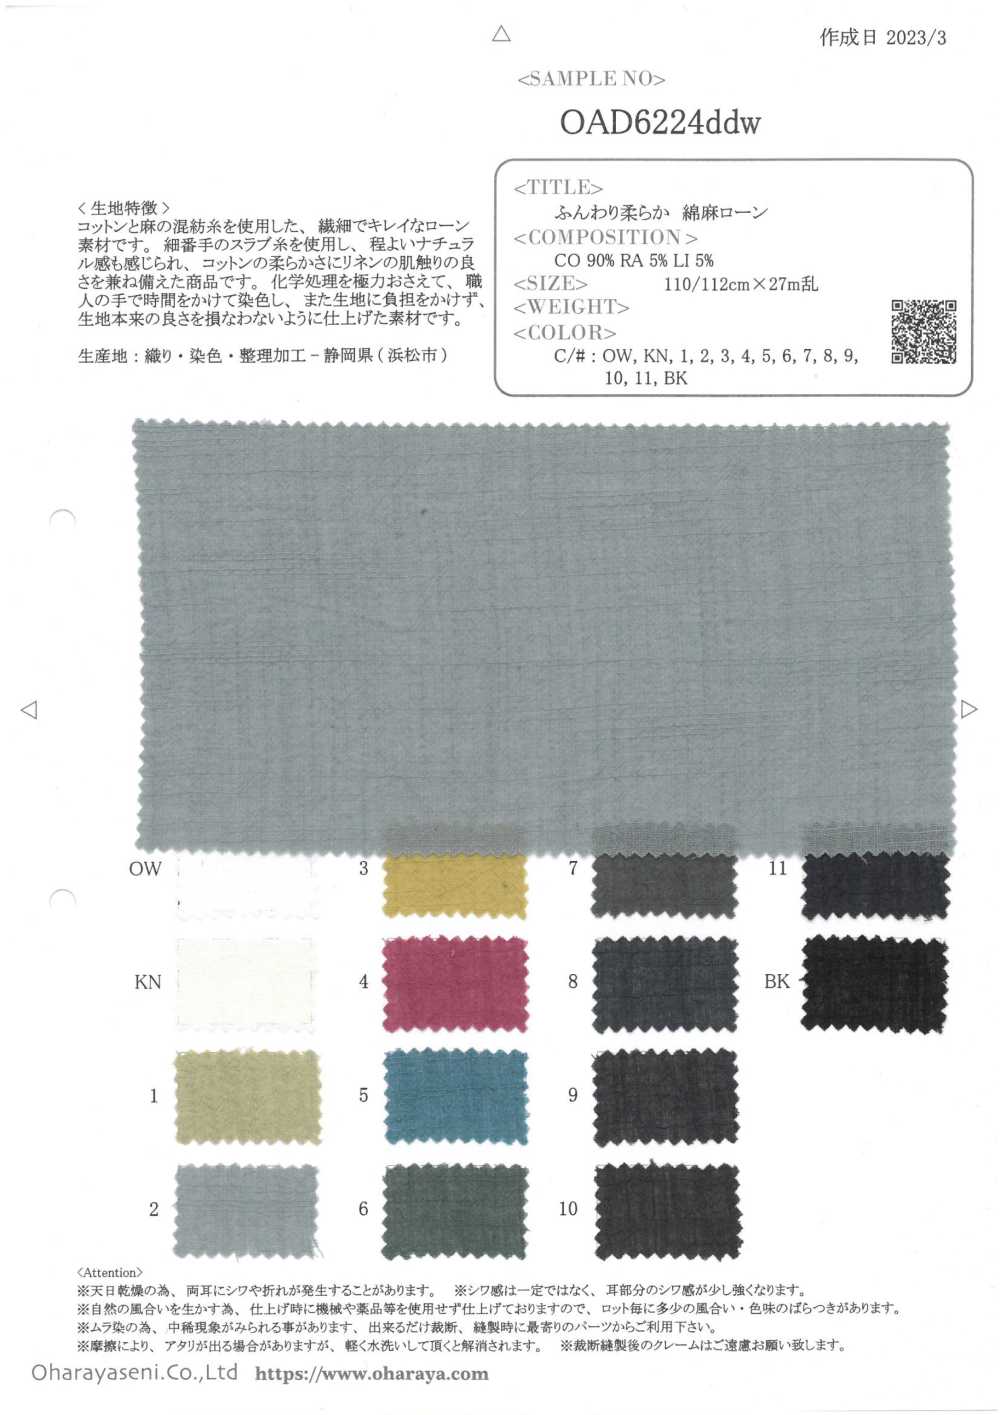 OAD6224DDW Pelouse En Lin Moelleux[Fabrication De Textile] Oharayaseni